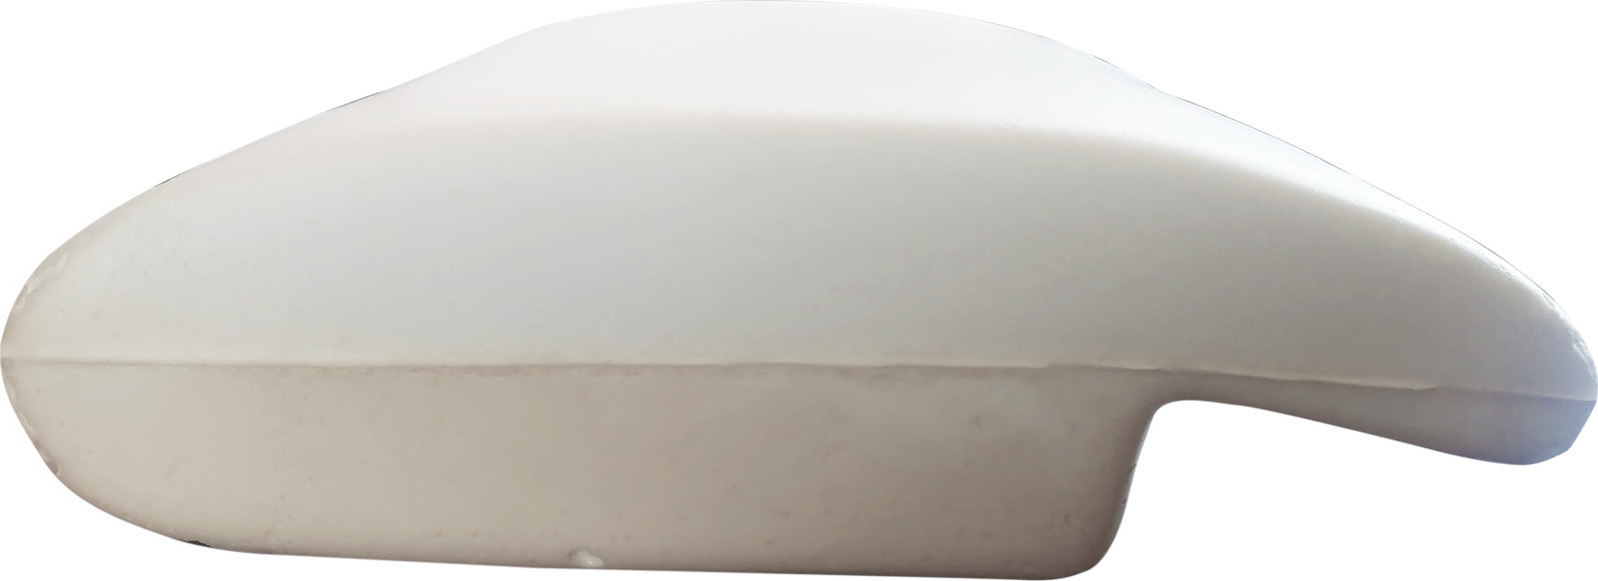 Μαξιλάρι Ύπνου Πολλαπλών Θέσεων AMVE MEMORY FOAM - VISCO ELASTIC SOFT PILLOW Μαλακό 65x45x13cm 13252